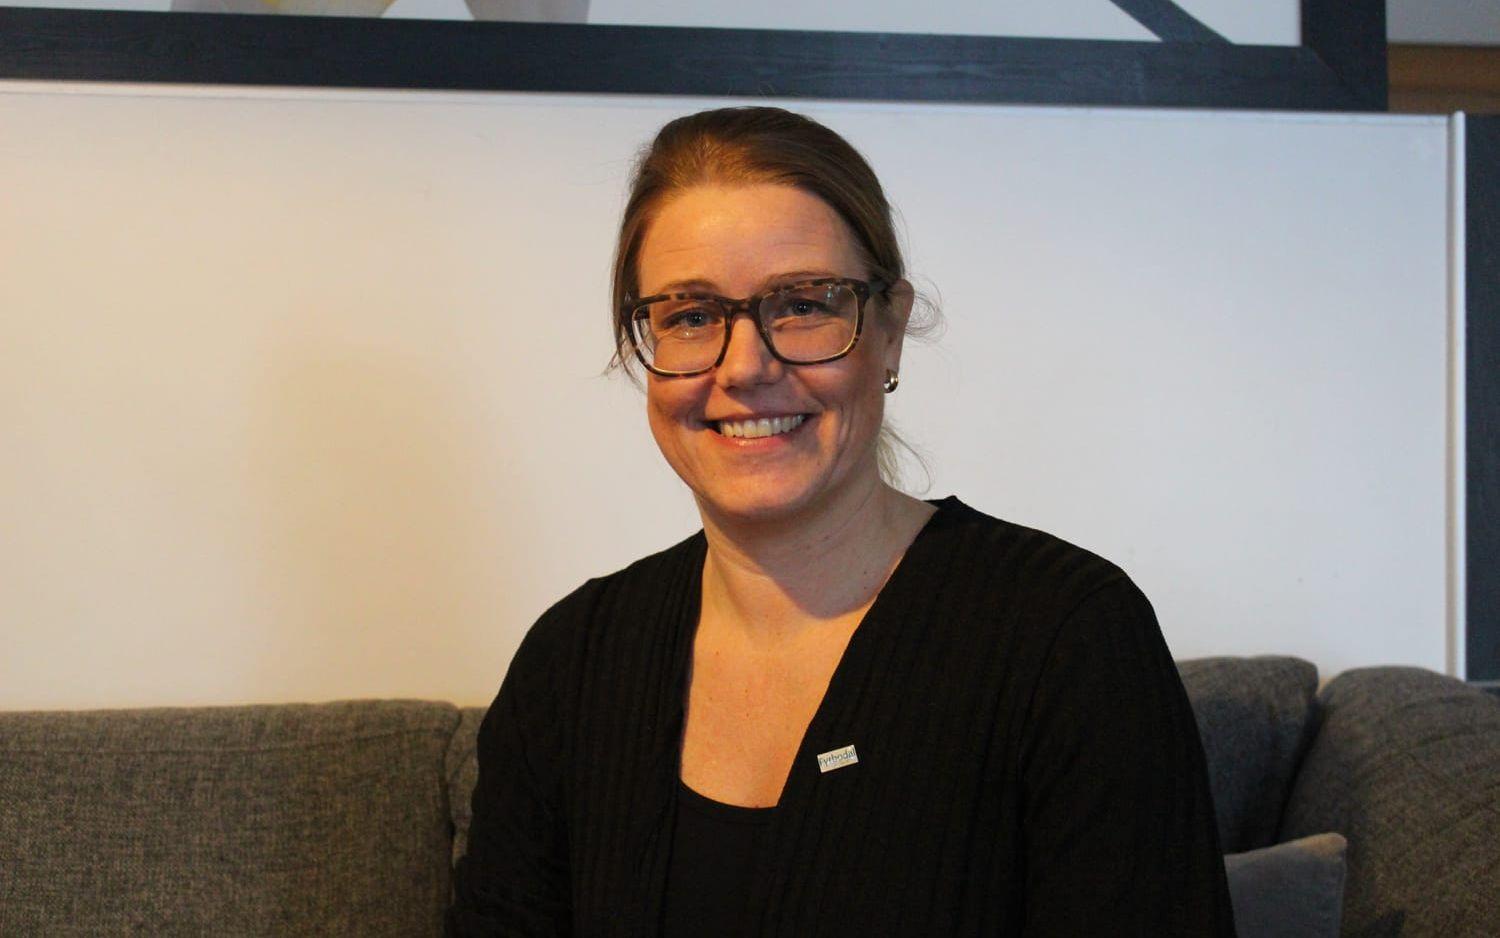 Anna Lärk Ståhlberg är näringslivsutvecklare vid Fyrbodals kommunalförbund. Hon är med och driver projektet "Bättre företagsklimat i Fyrbodal" som drog igång i höstas, som handlar om att utveckla företagsamheten i regionen. Bild: Caroline Holmgren